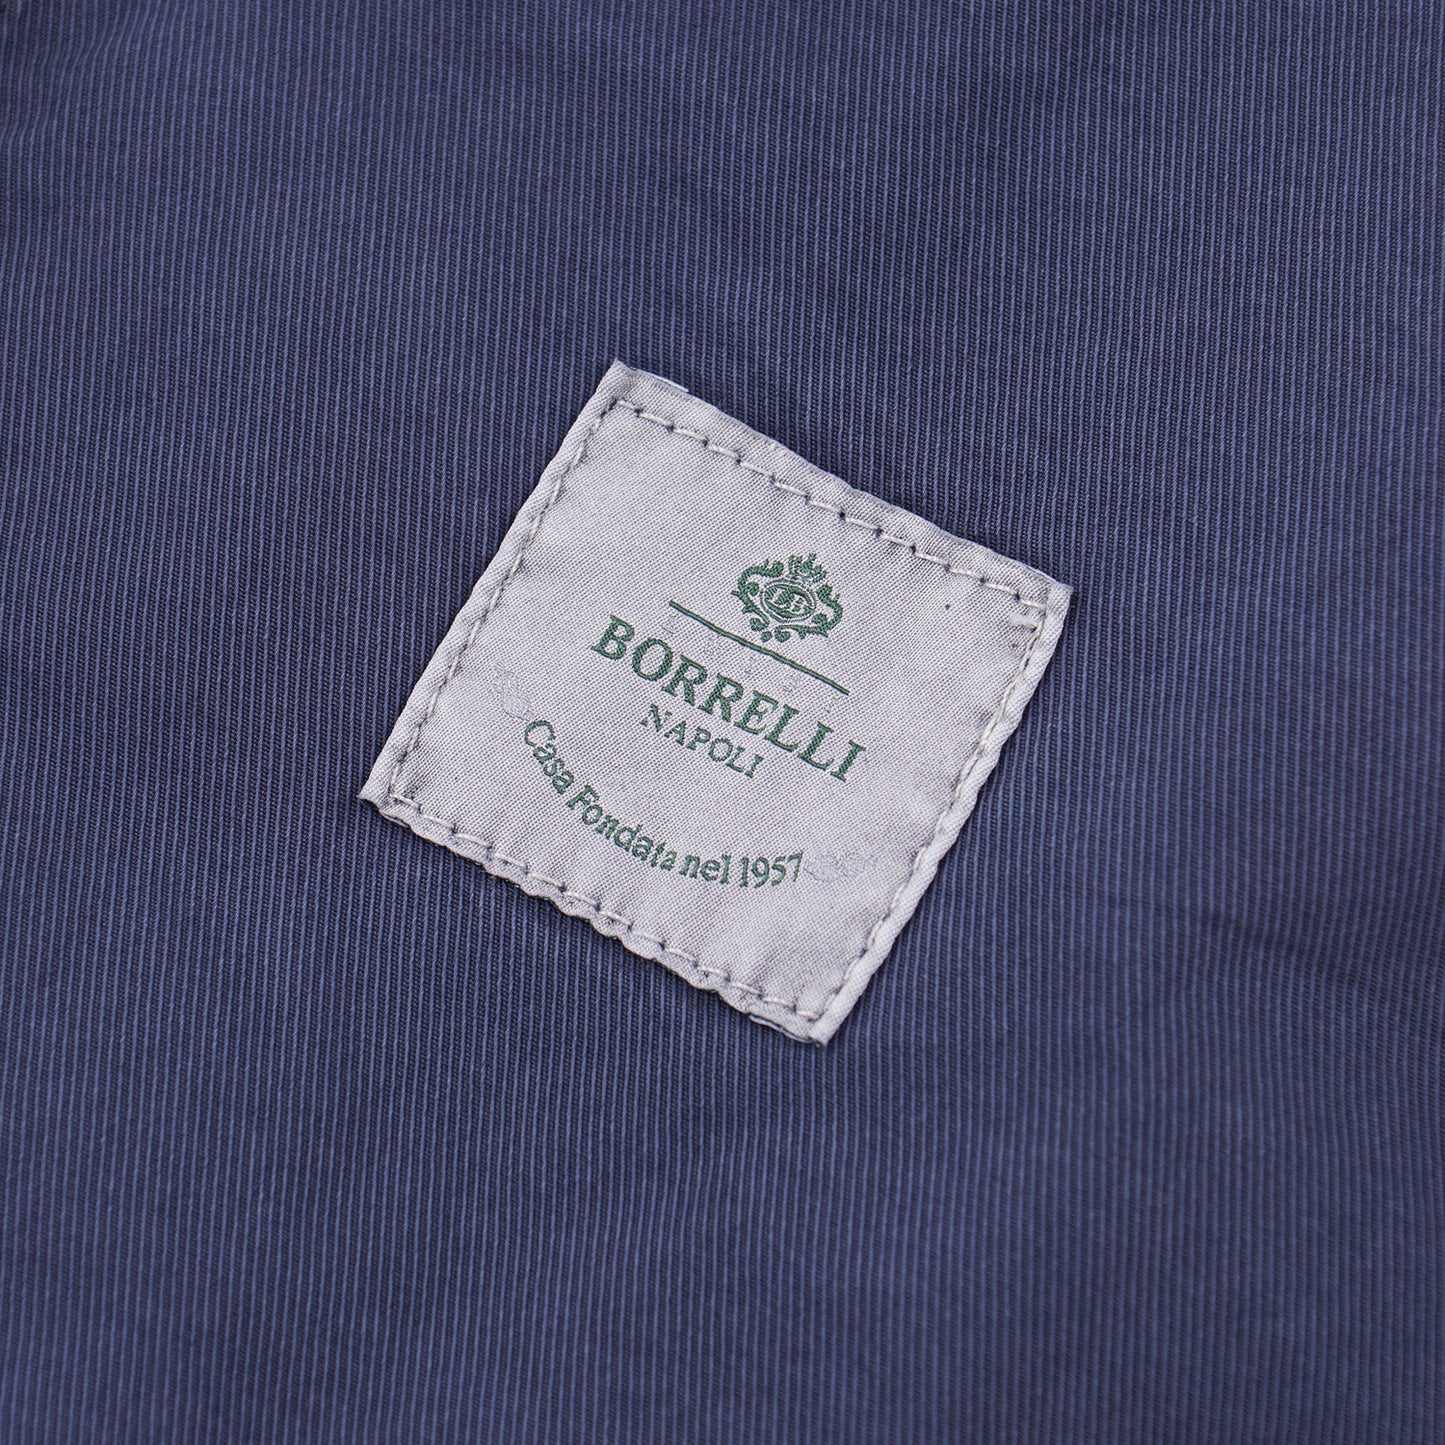 Borrelli Lightweight Cotton Jean Jacket - Top Shelf Apparel